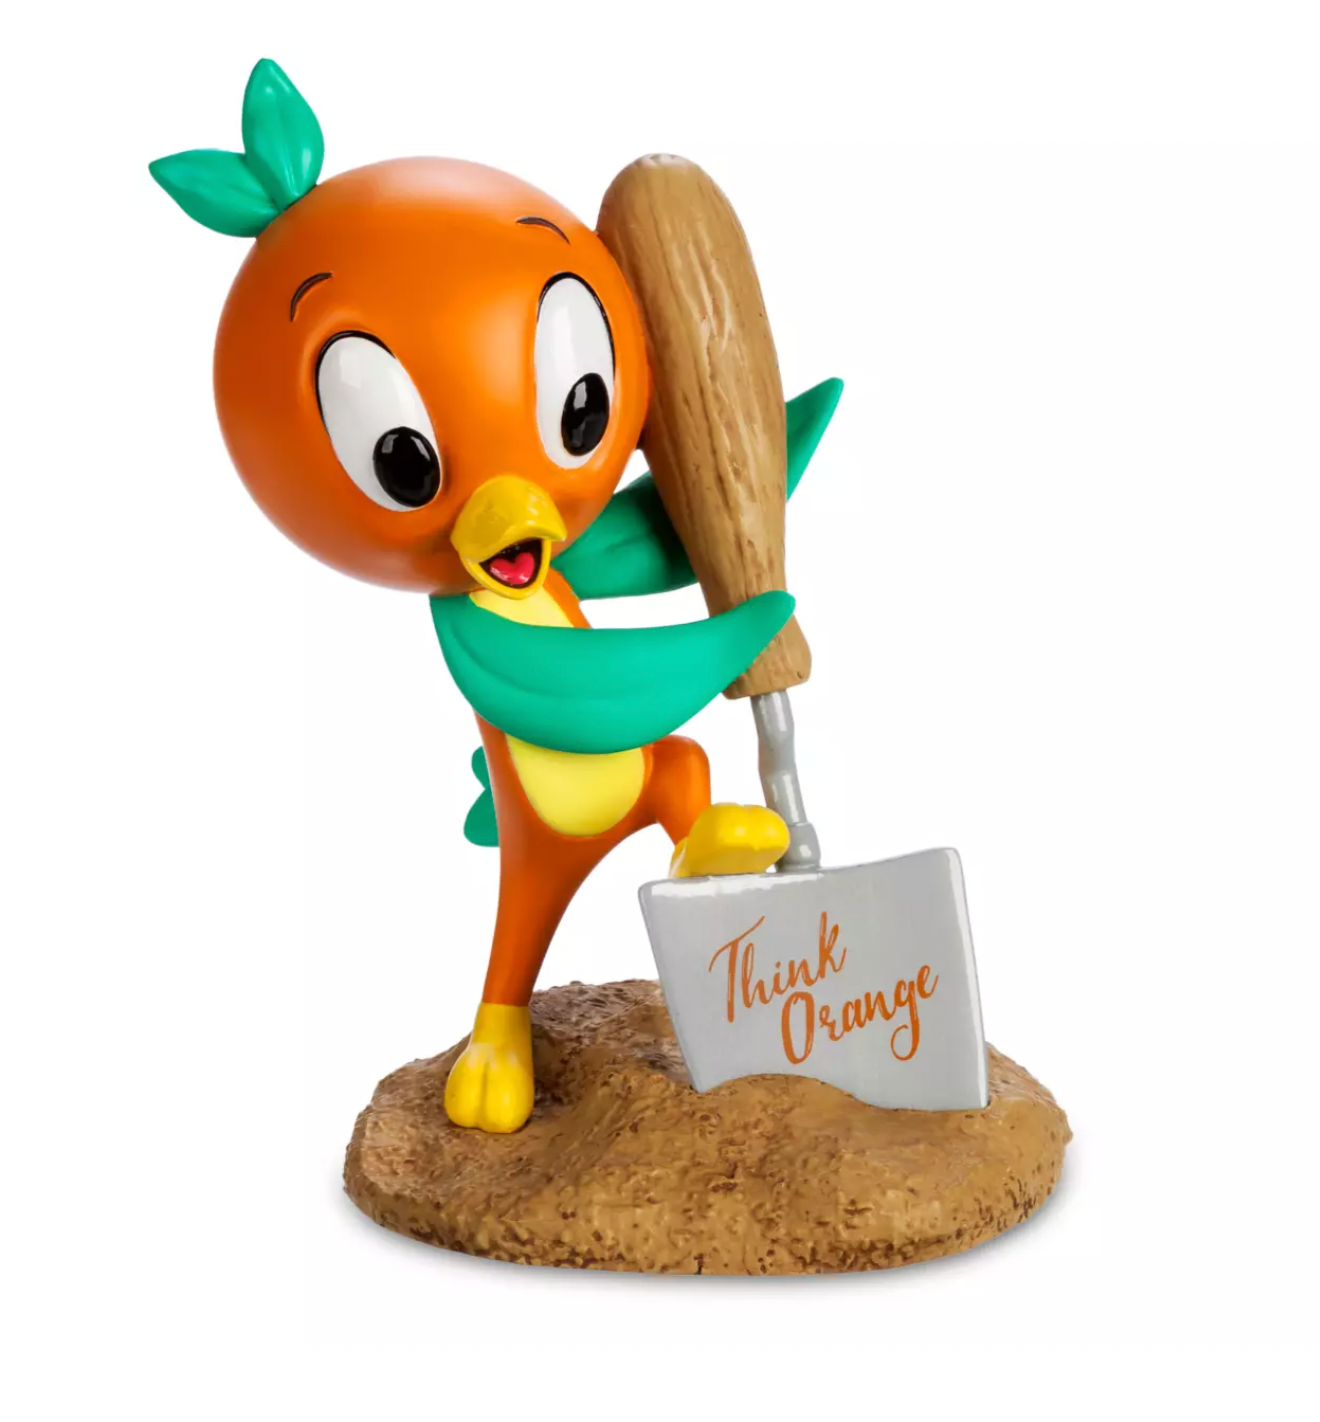 Disney Epcot Flower and Garden Festival 2022 Orange Bird Figure Think Orange New